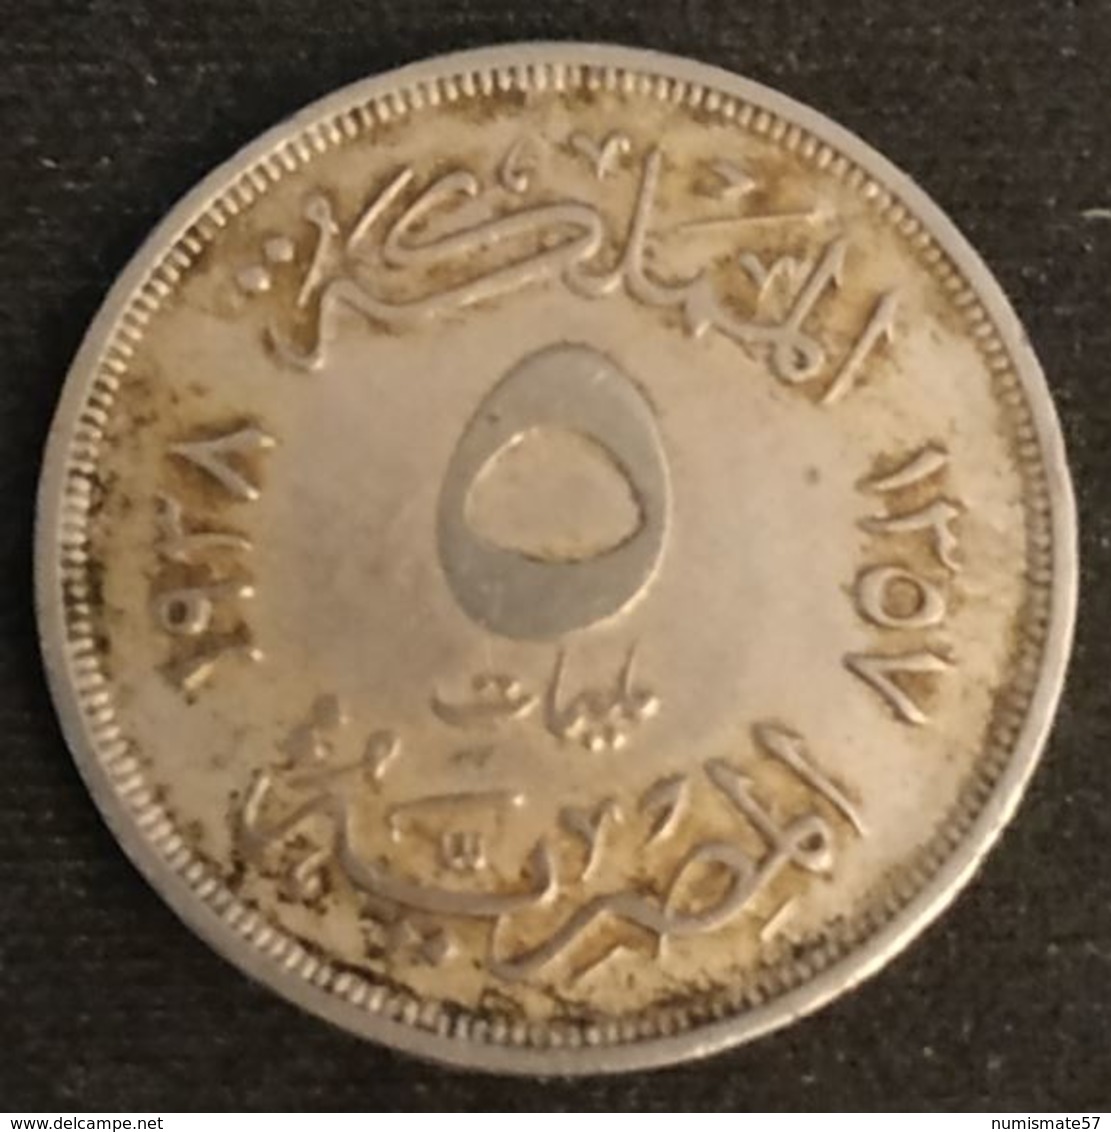 EGYPTE - EGYPT - 5 MILLIEMES 1938 - ( 1357 ) - KM 363 - Egypte